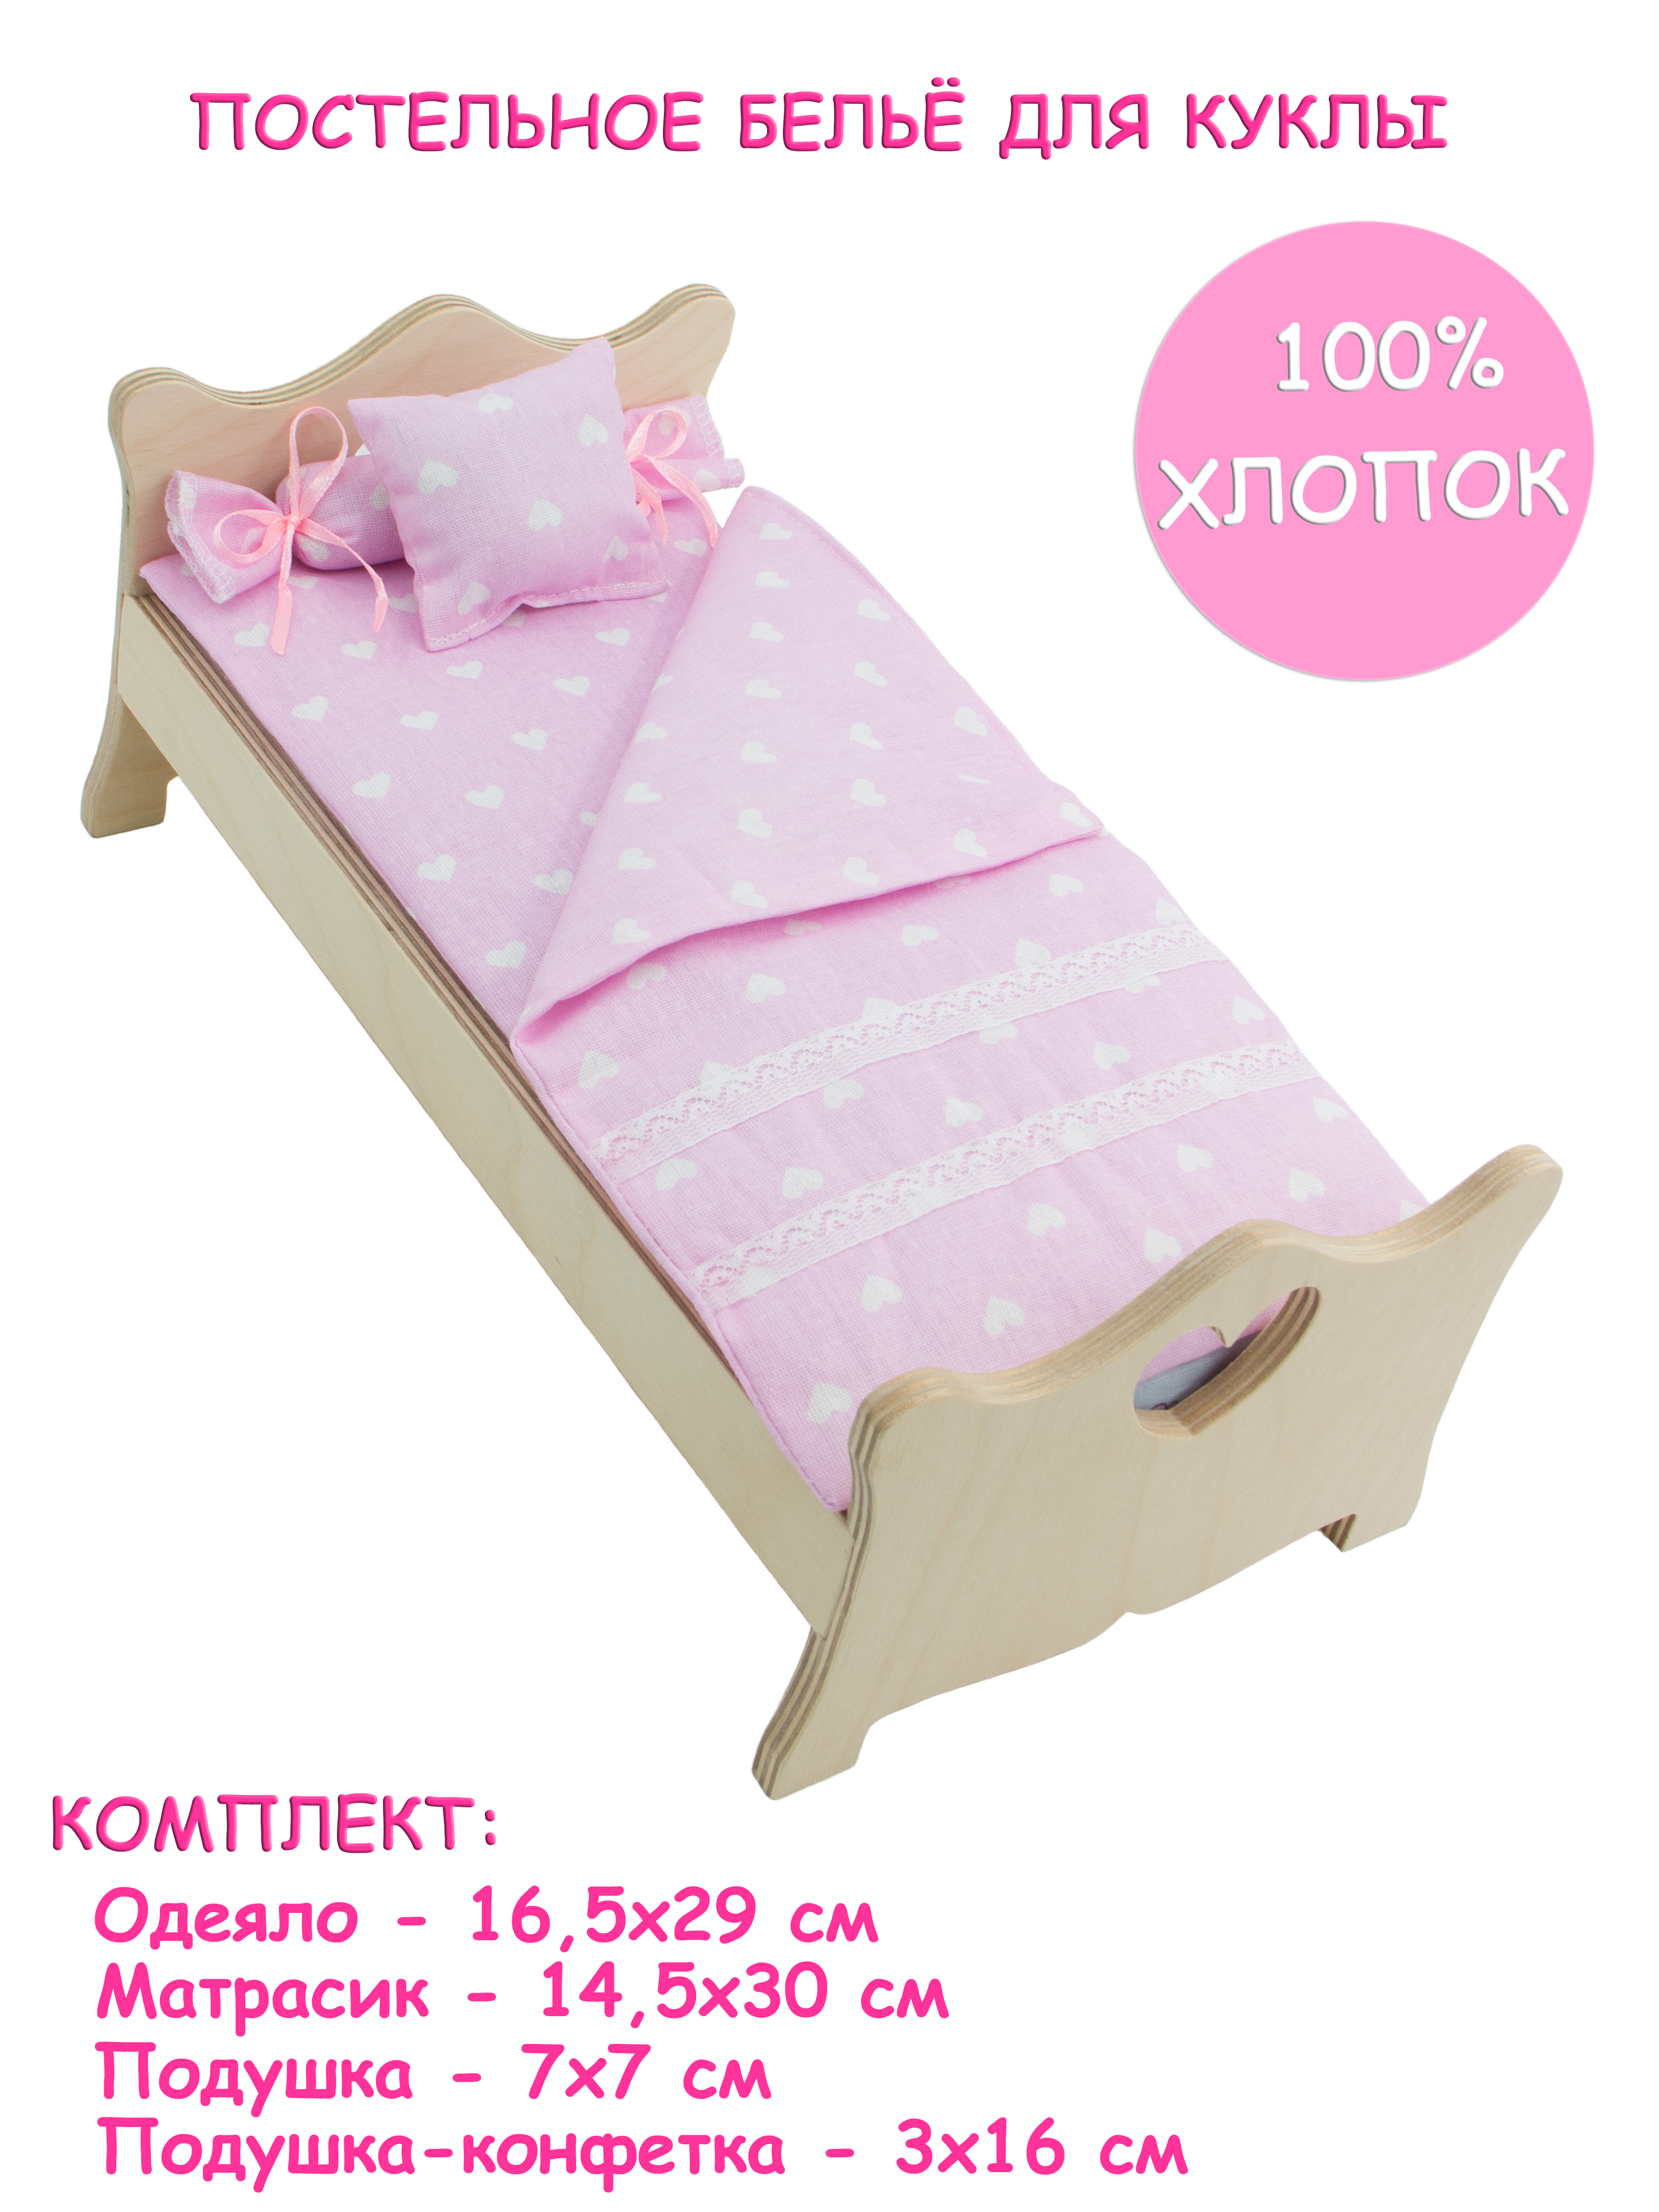 Комплект постельного белья Модница для куклы 29 см бледно-розовый 2002бледно-розовый - фото 1